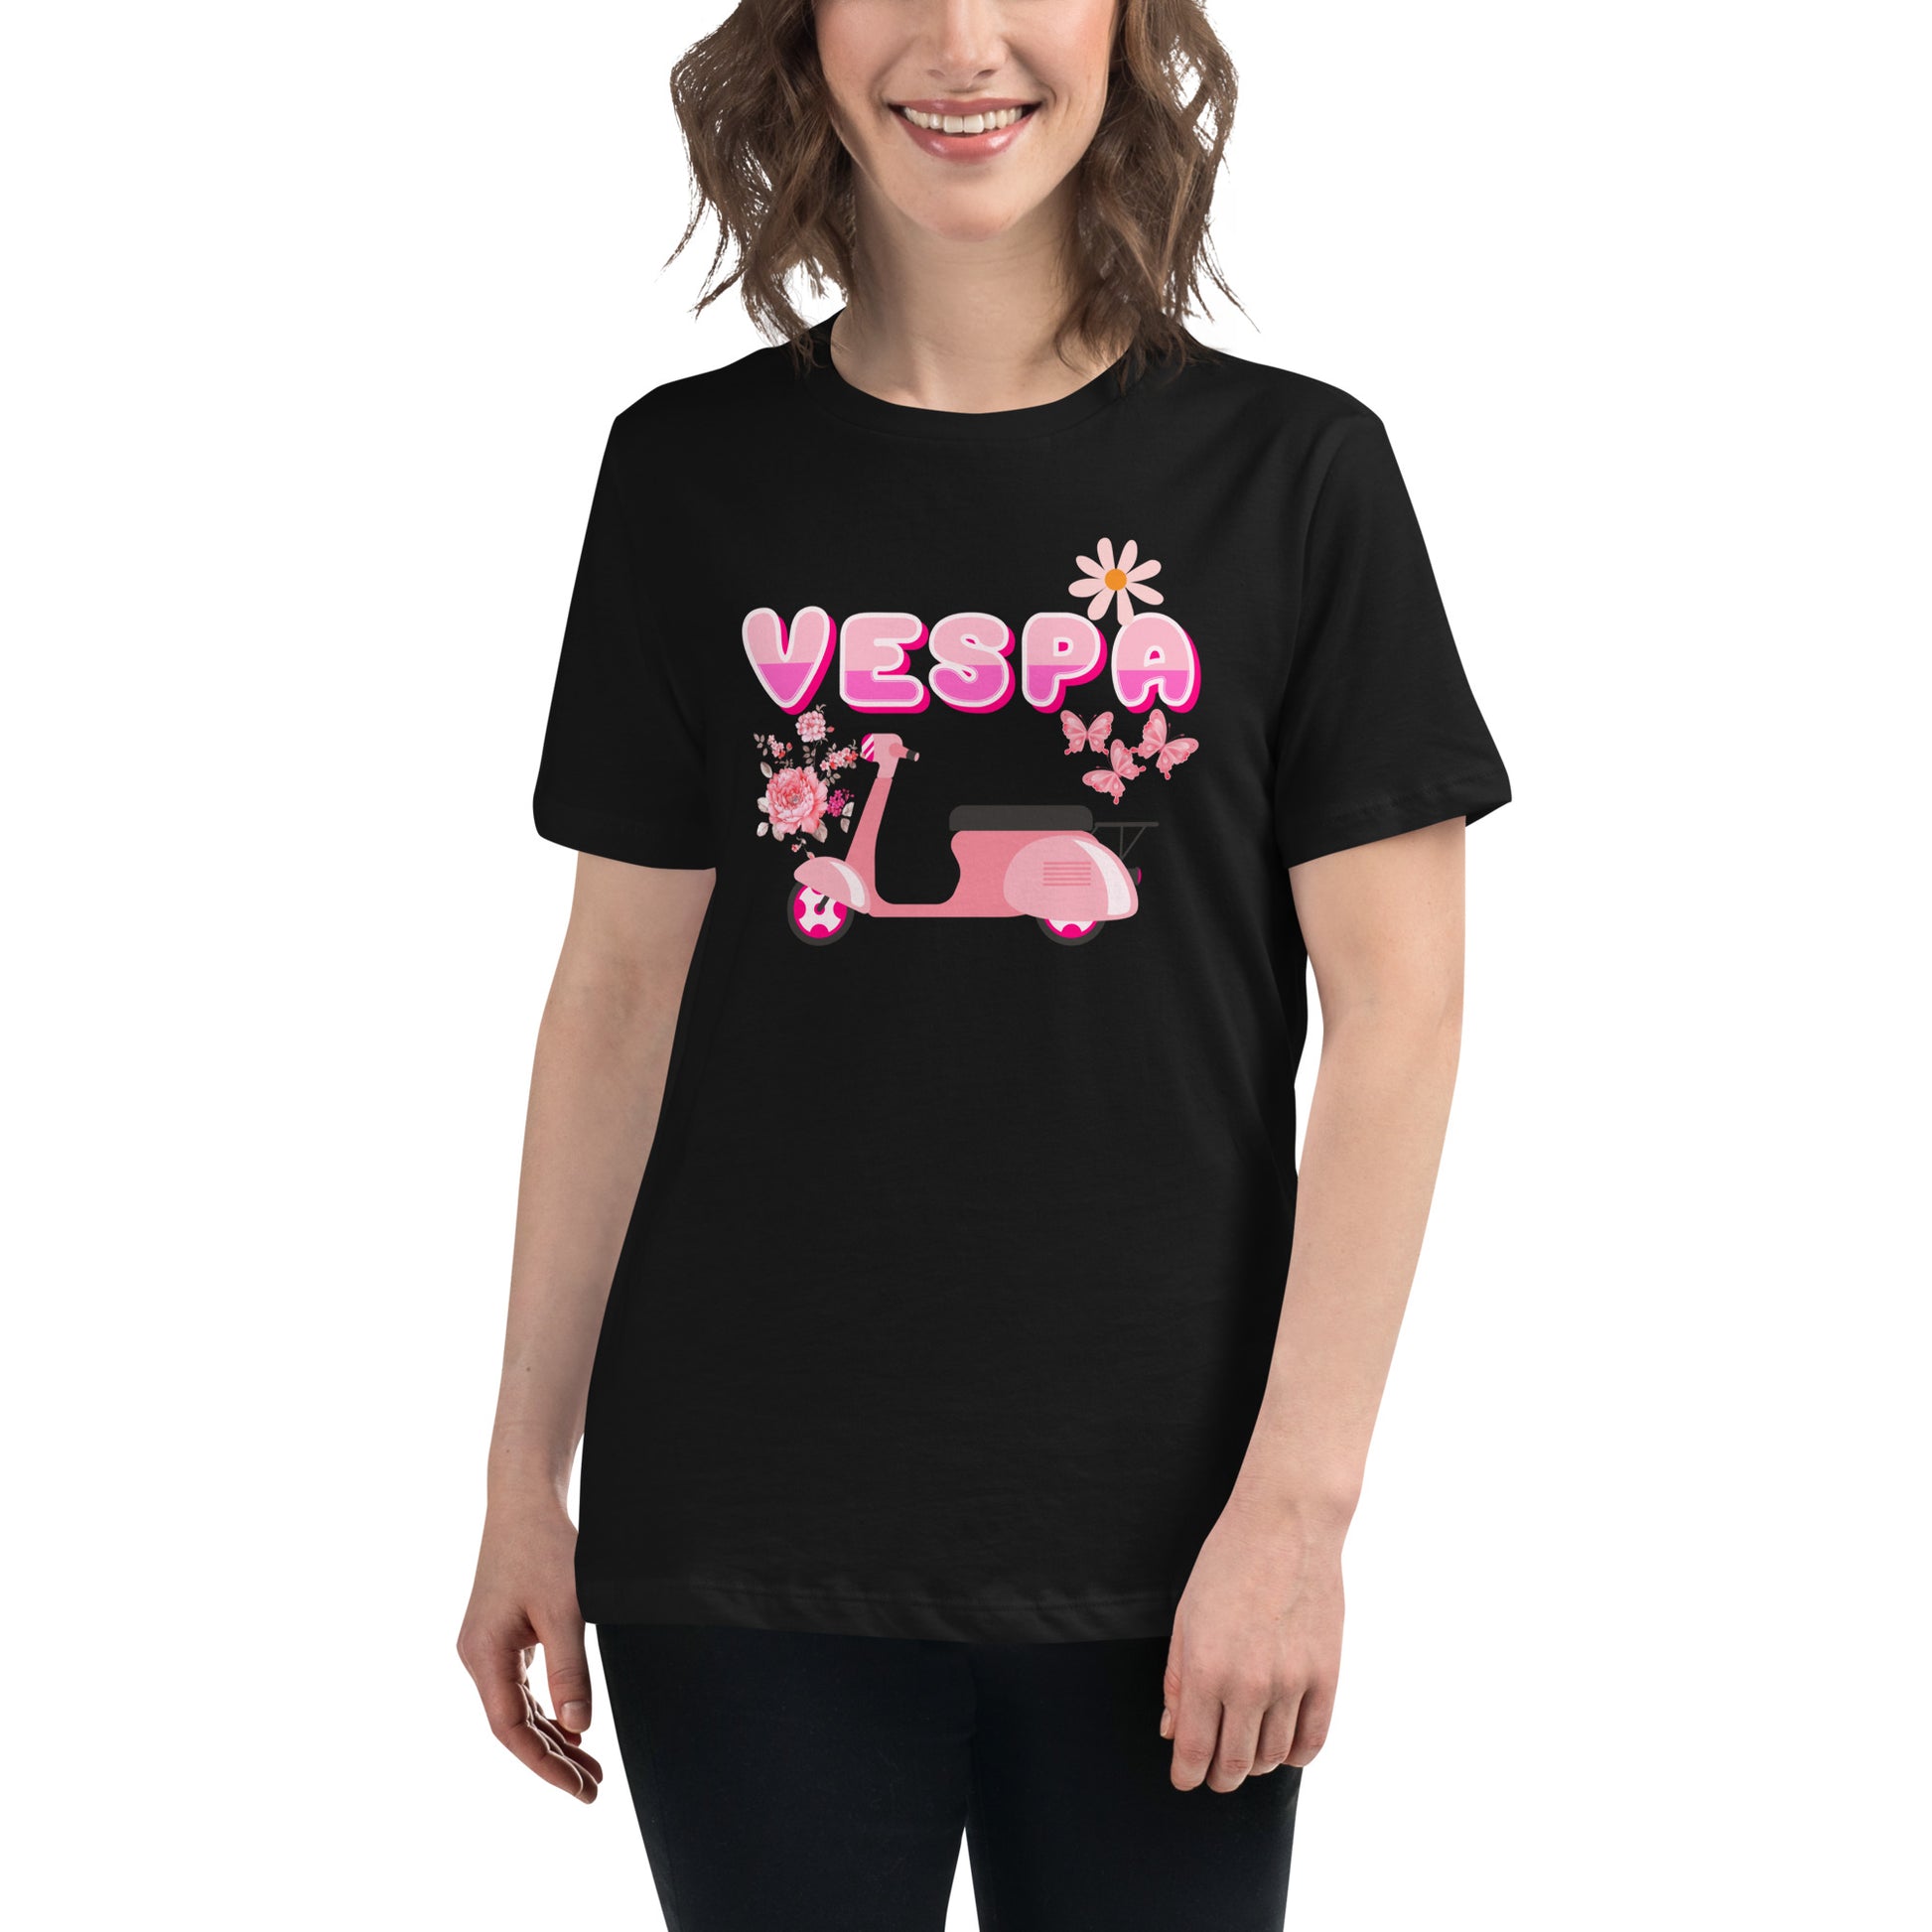 Camiseta negra de mujer con diseño de vespa